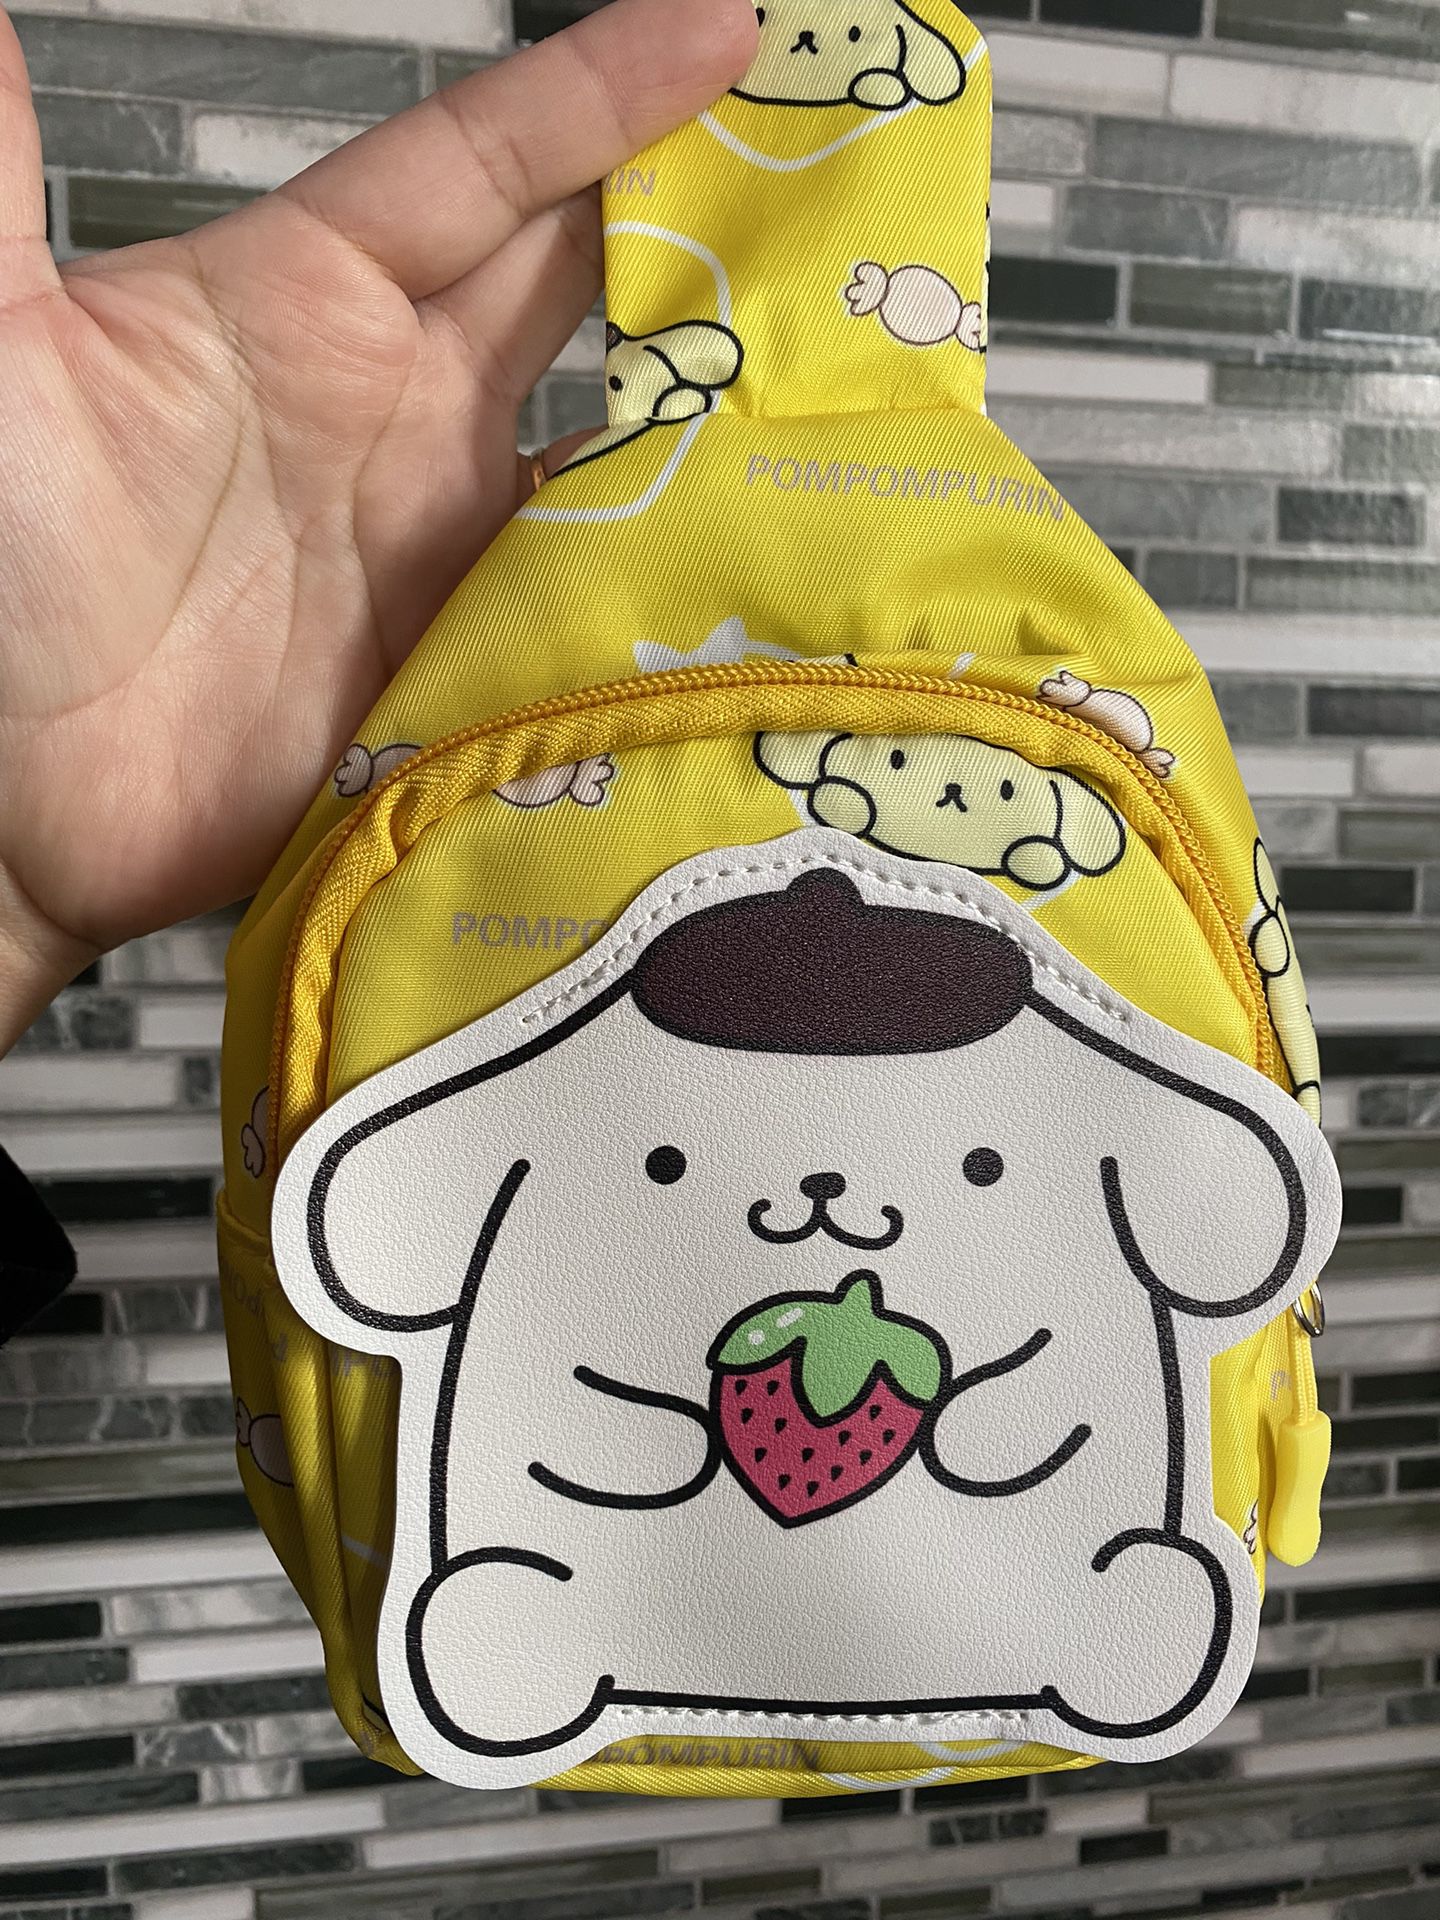 Sanrio Hello Kitty Pompom Bodycross Fanny Pack Purse 